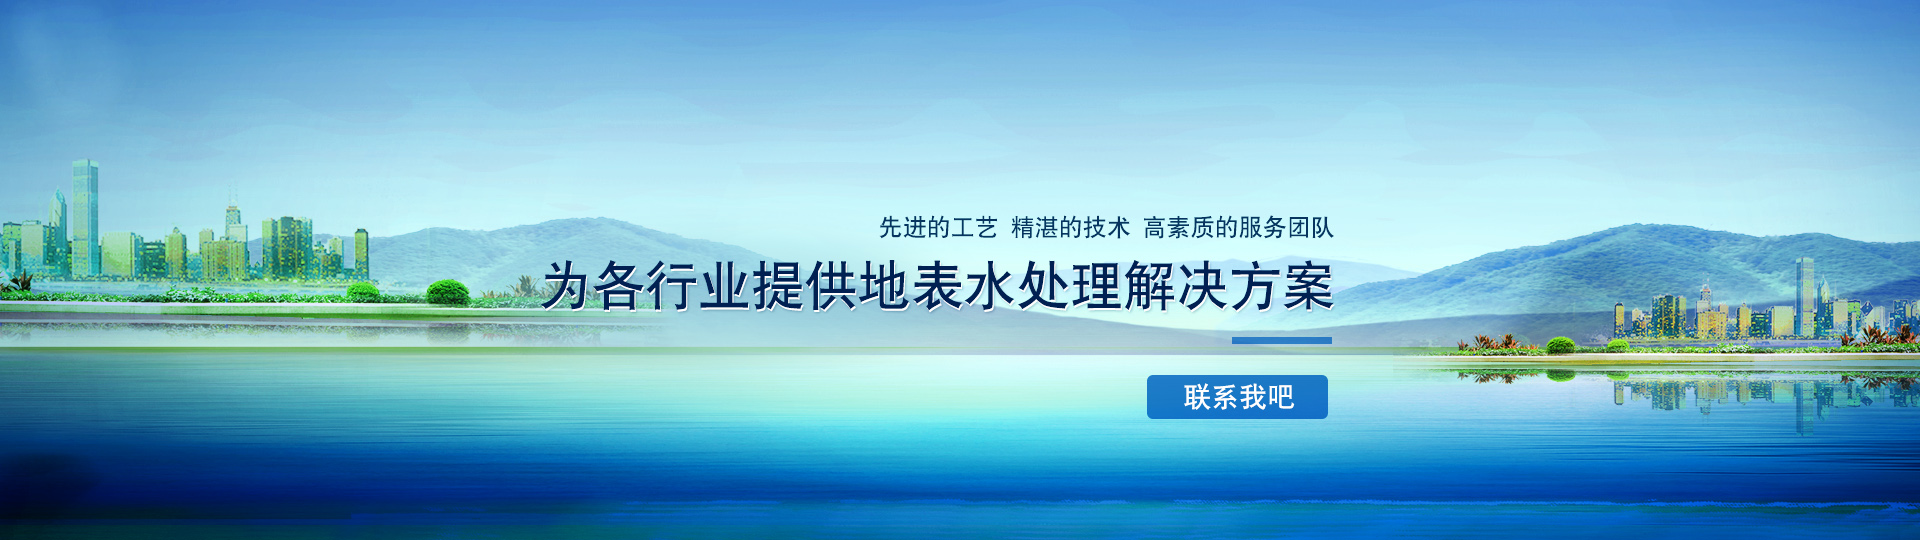 杭州万泉水处理设备机械有限公司